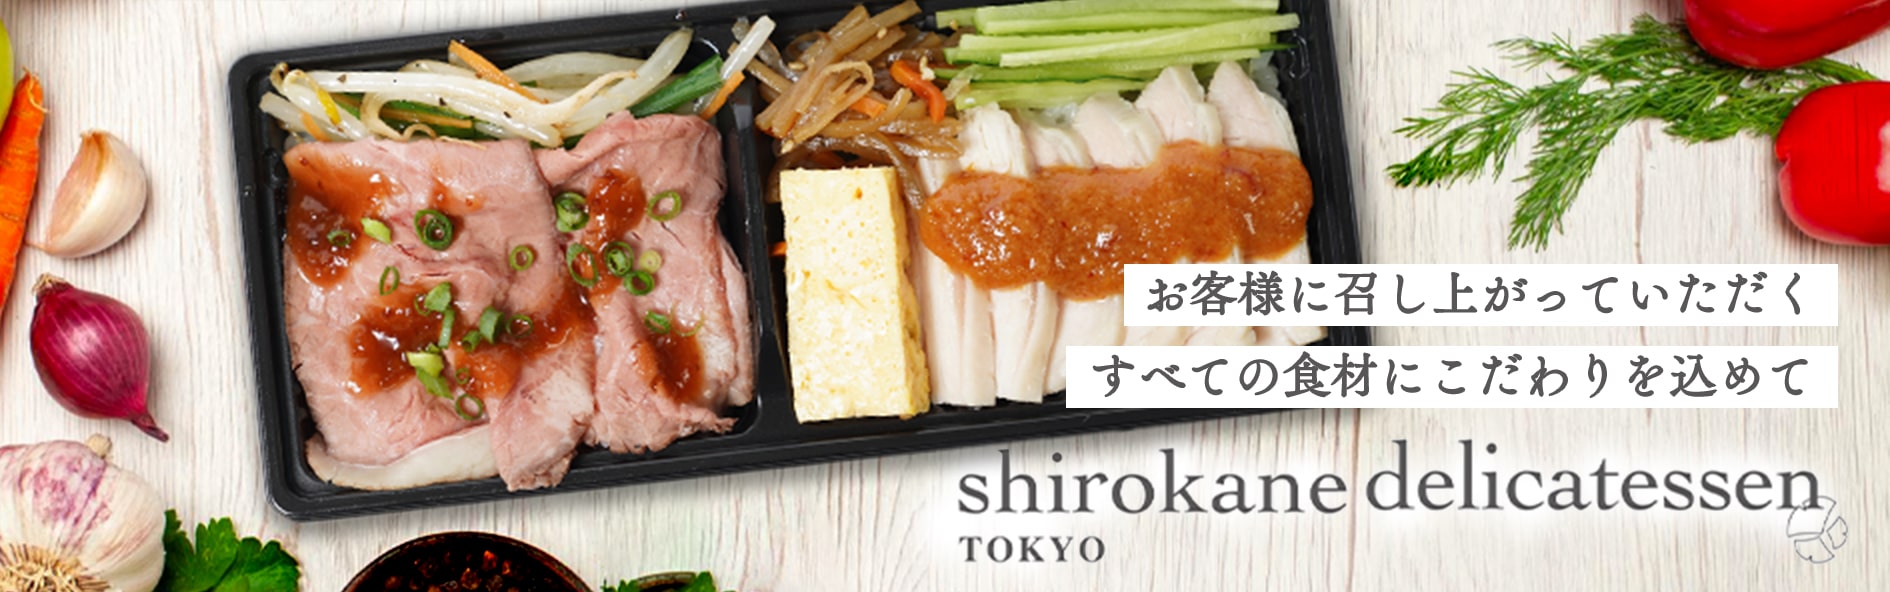 shirokane delicatessen TOKYO